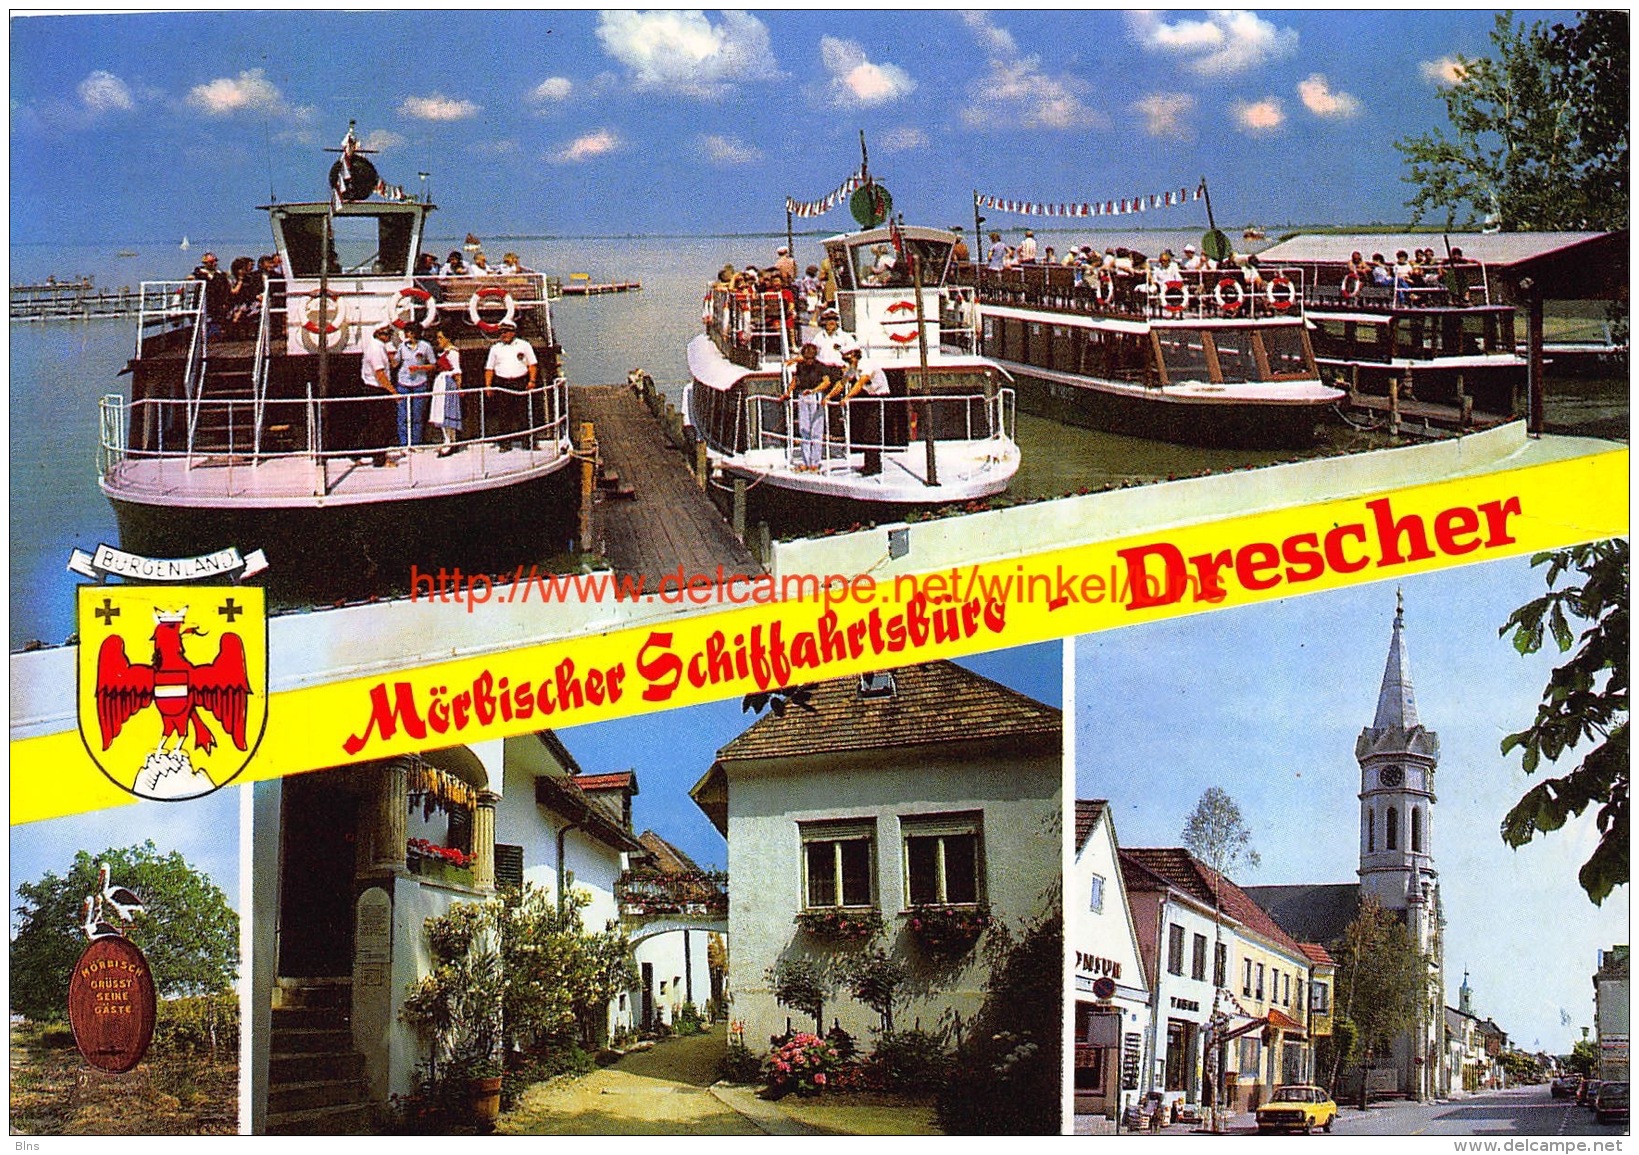 Mörbischer Schiffahrtsbüro Drescher - Burgenland